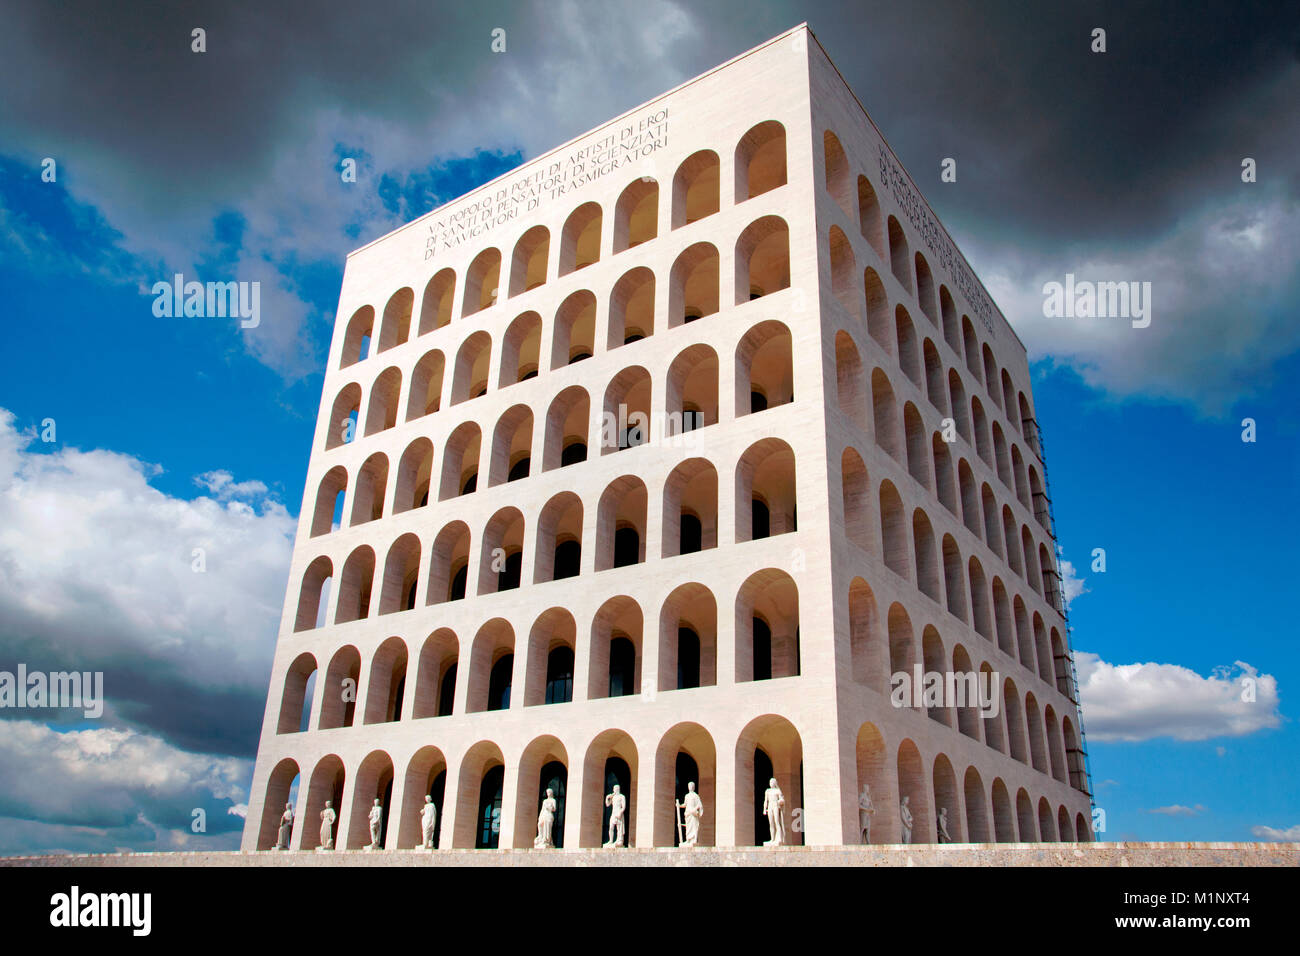 Le Palazzo della Civiltà Italiana / Palazzo della Civiltà del Lavoro / Colosseo Quadrato, Rome, Italie Banque D'Images